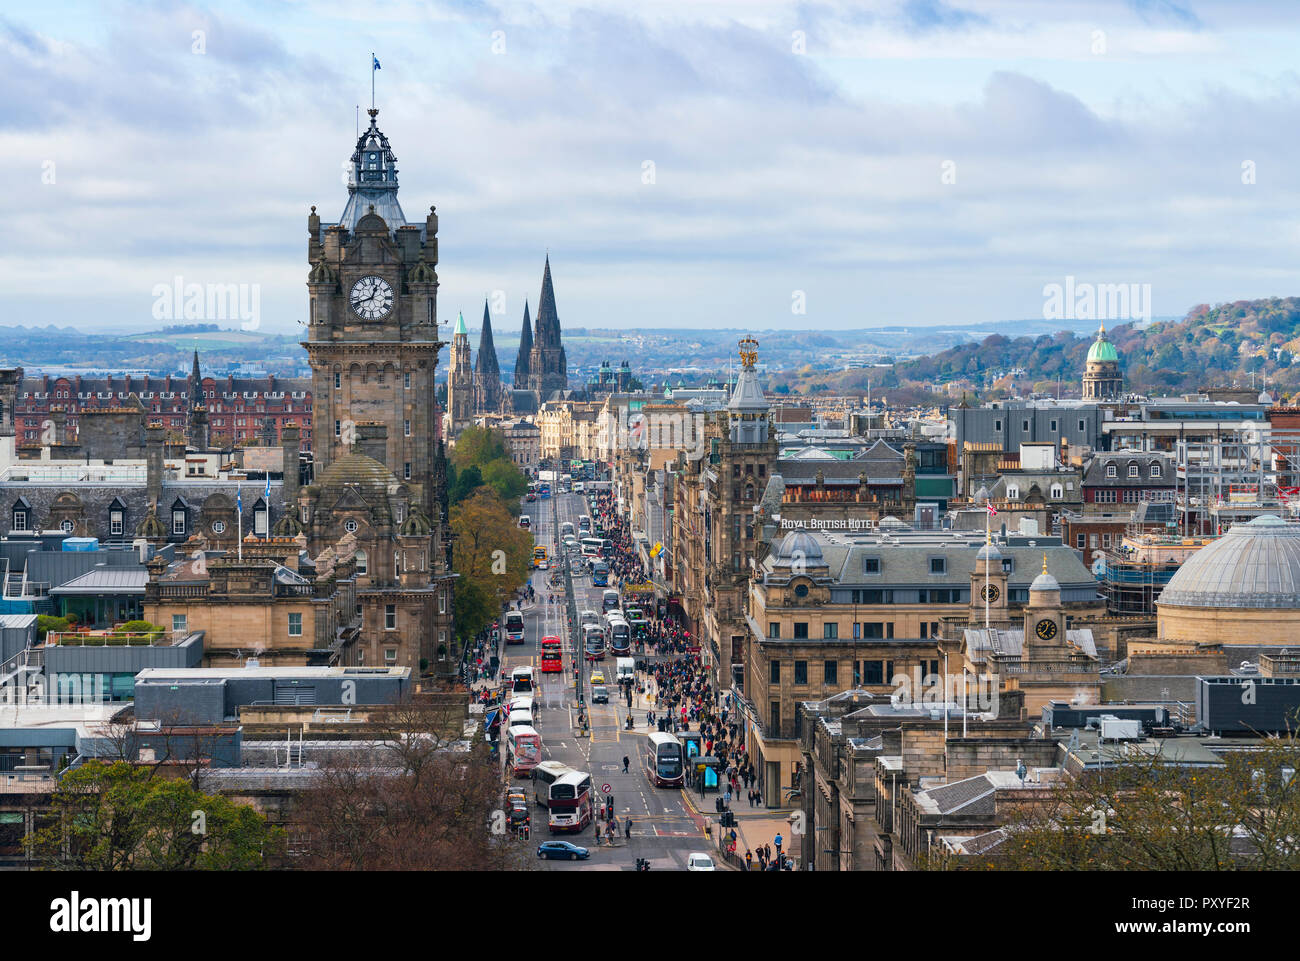 Tagsüber Blick entlang der Princes Street in Edinburgh, der wichtigsten Einkaufsstraße der Stadt, Schottland, Großbritannien. Stockfoto